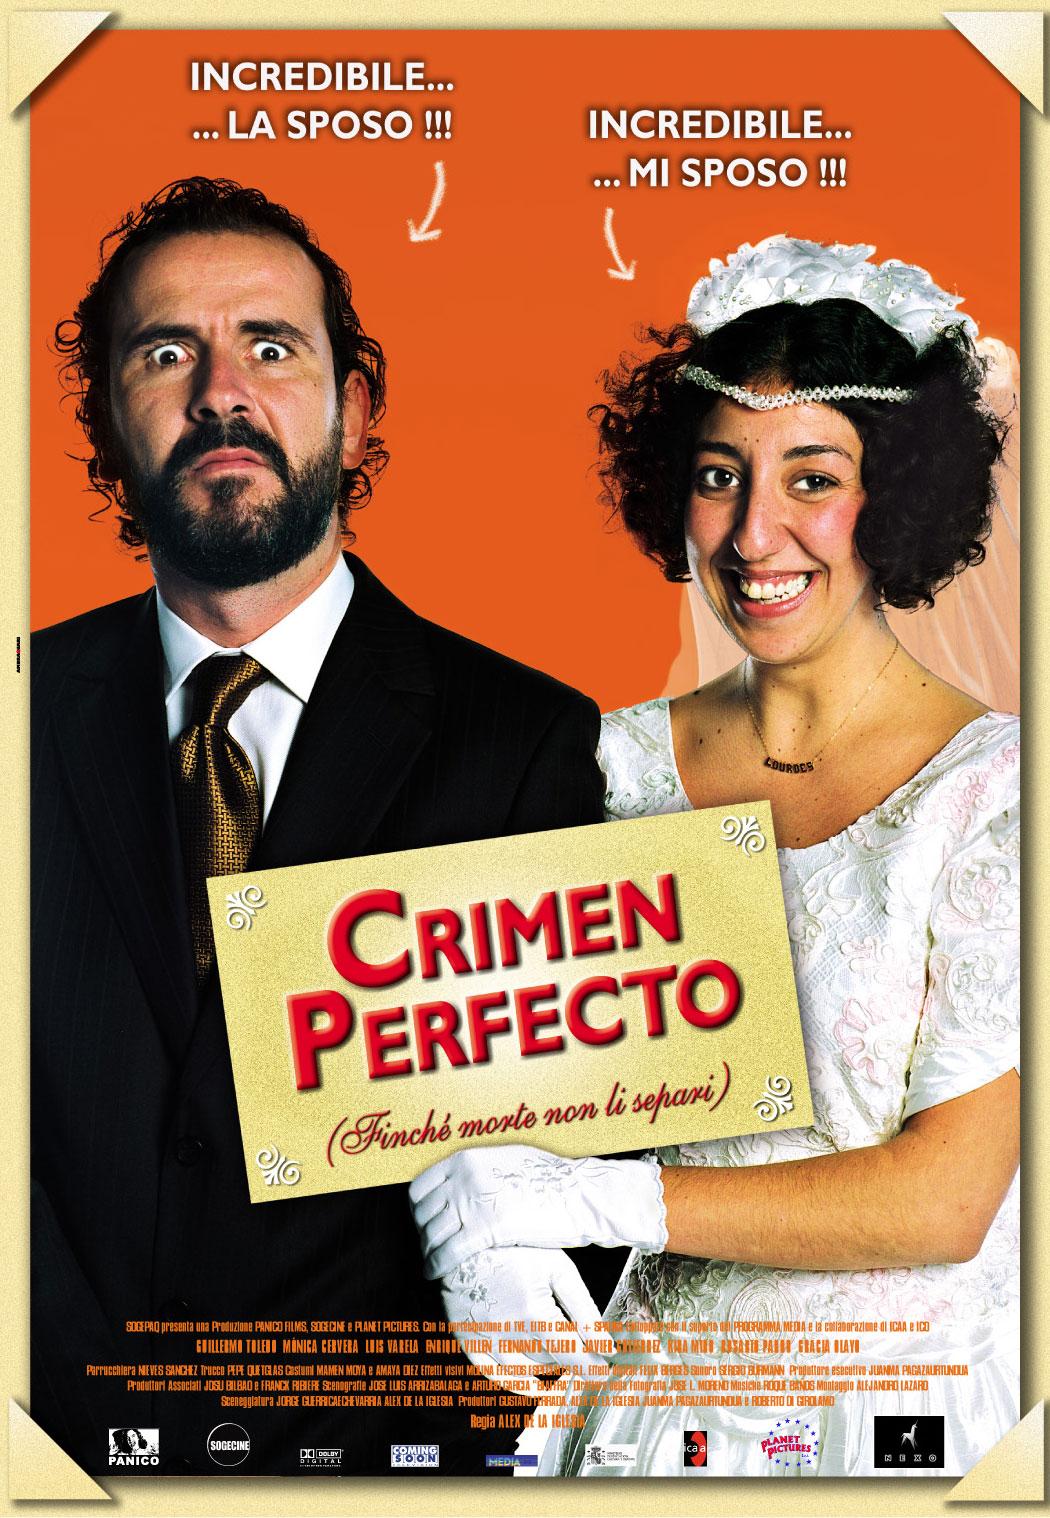 El Crimen Perfecto (The Perfect Crime) (2004) Main Poster